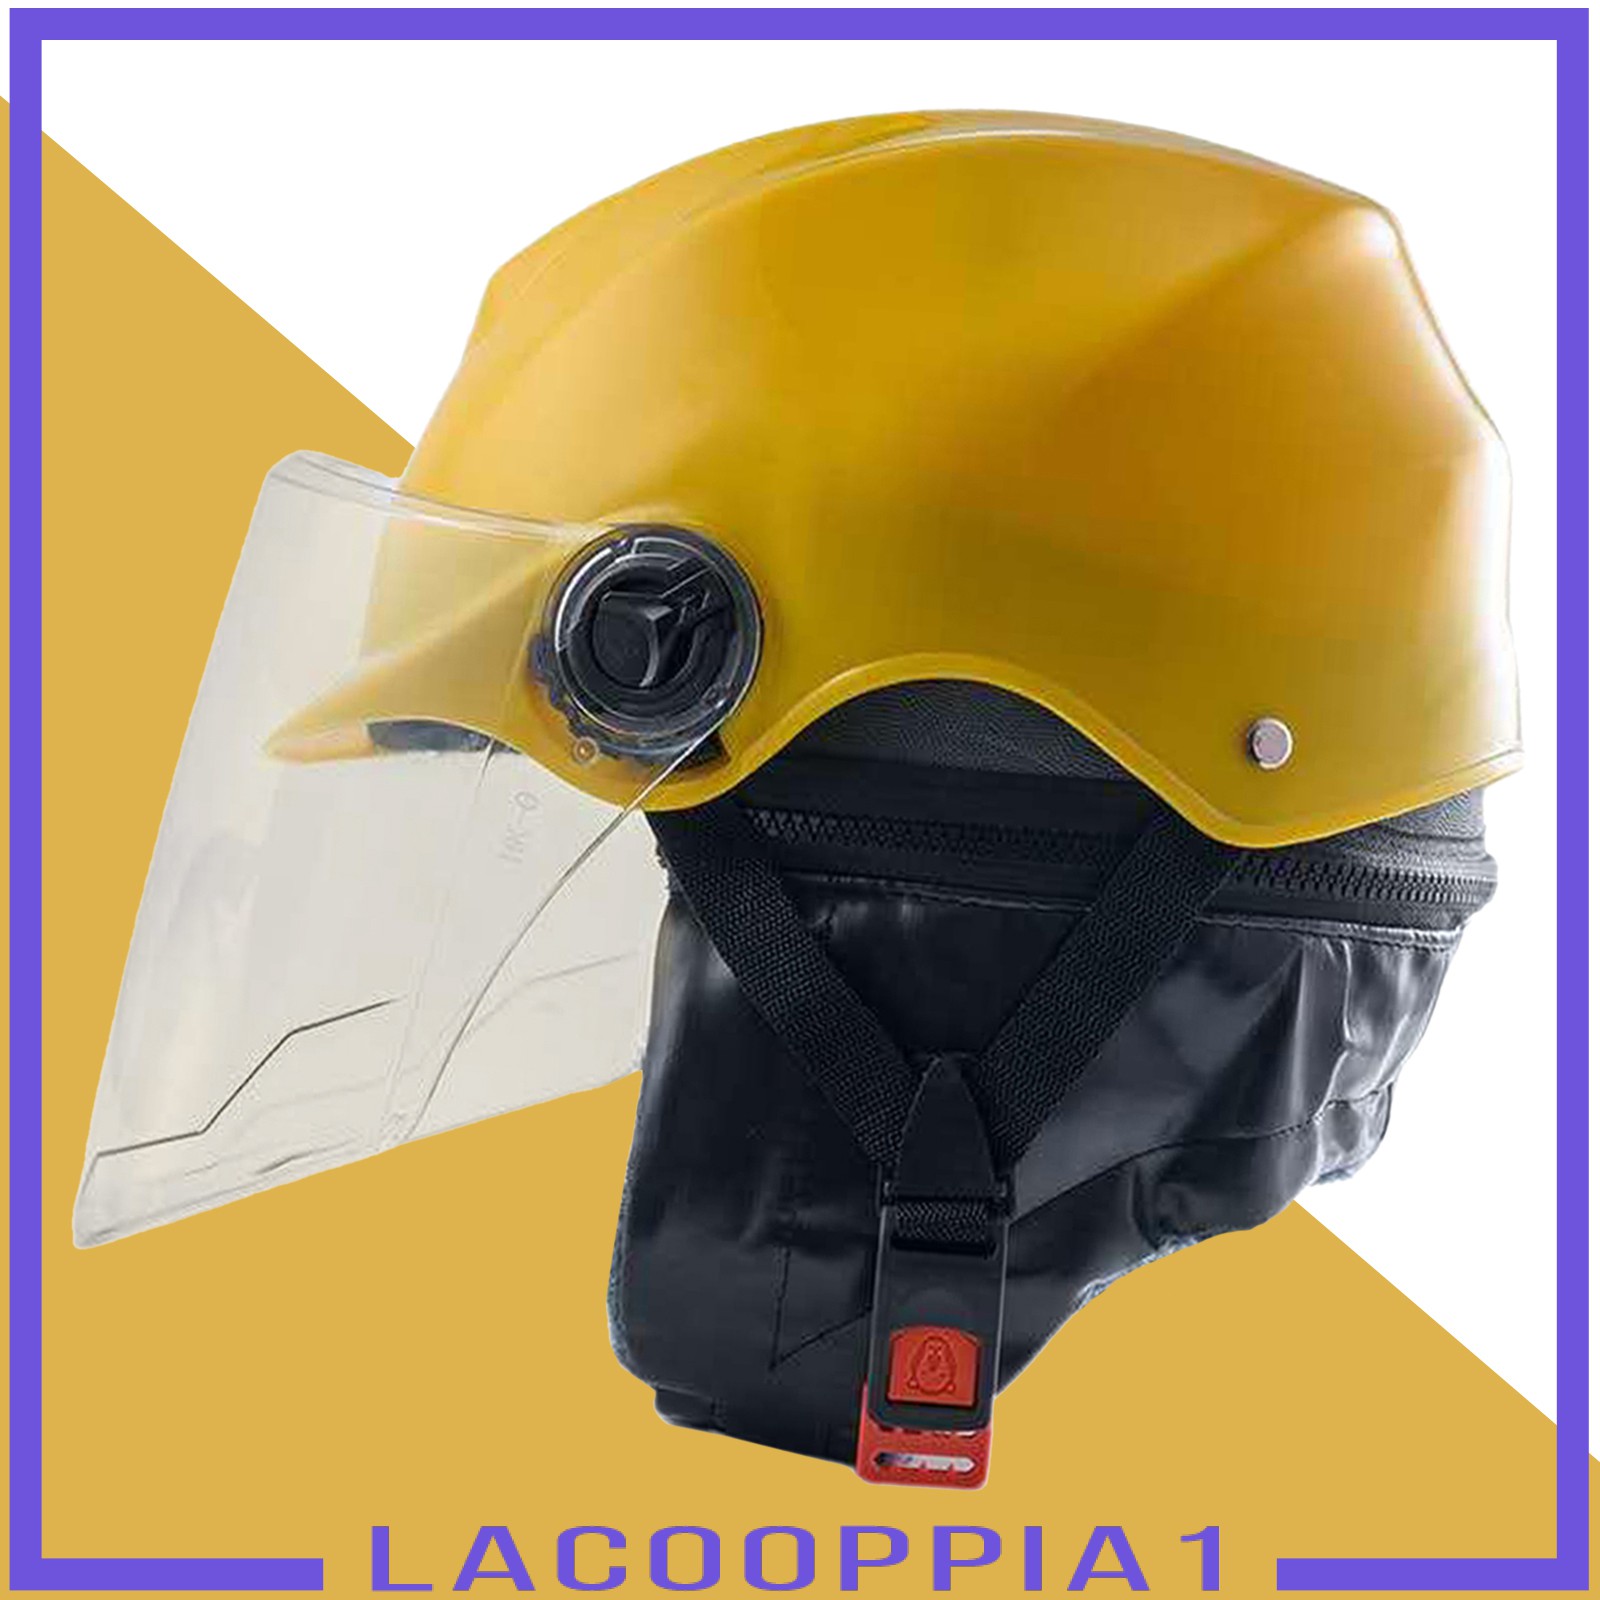 Mũ Bảo Hiểm Lapoppia1 Chuyên Dụng Cho Hoạt Động Đạp Xe Leo Núi